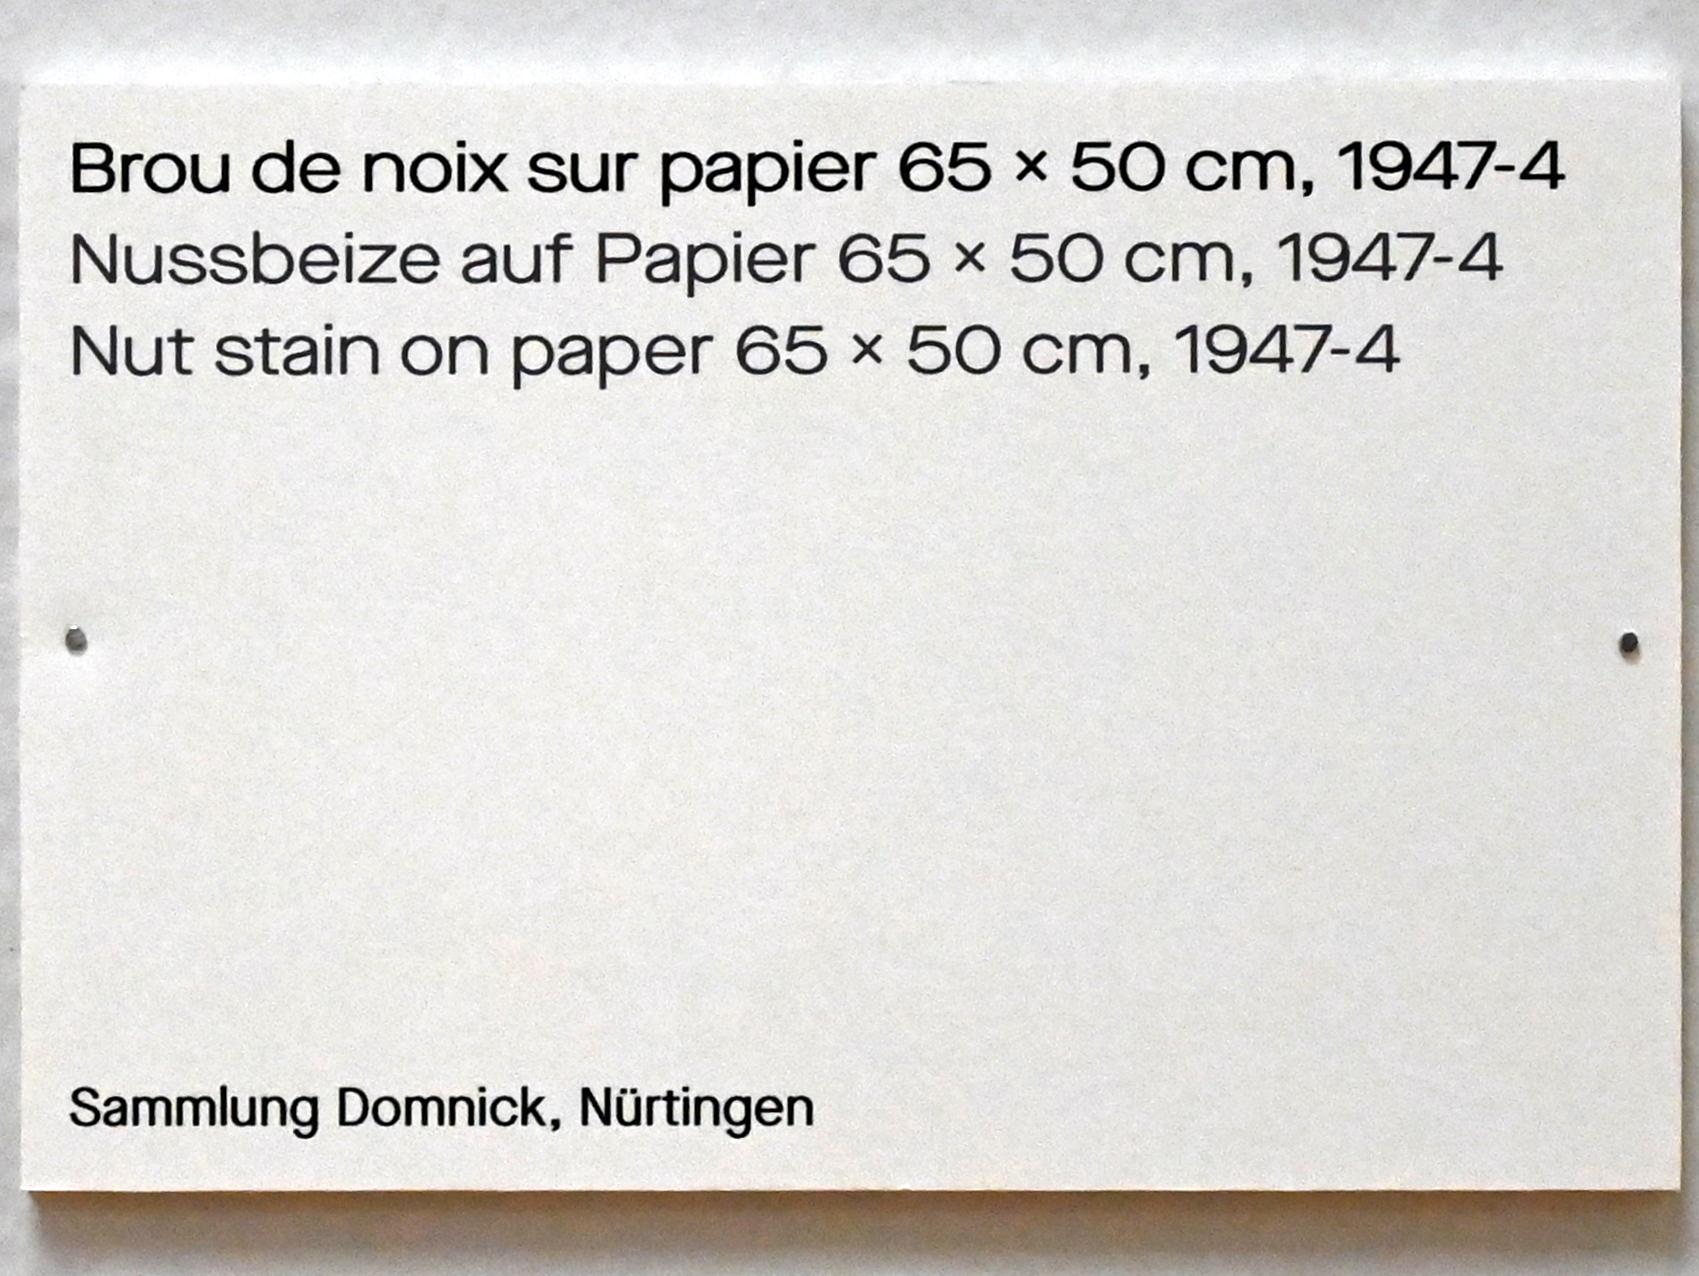 Pierre Soulages (1946–2019), Nussbeize auf Papier 65 x 50 cm, 1947-4, Chemnitz, Kunstsammlungen am Theaterplatz, Ausstellung "Soulages" vom 28.03.-25.07.2021, Saal 4, 1947, Bild 2/2